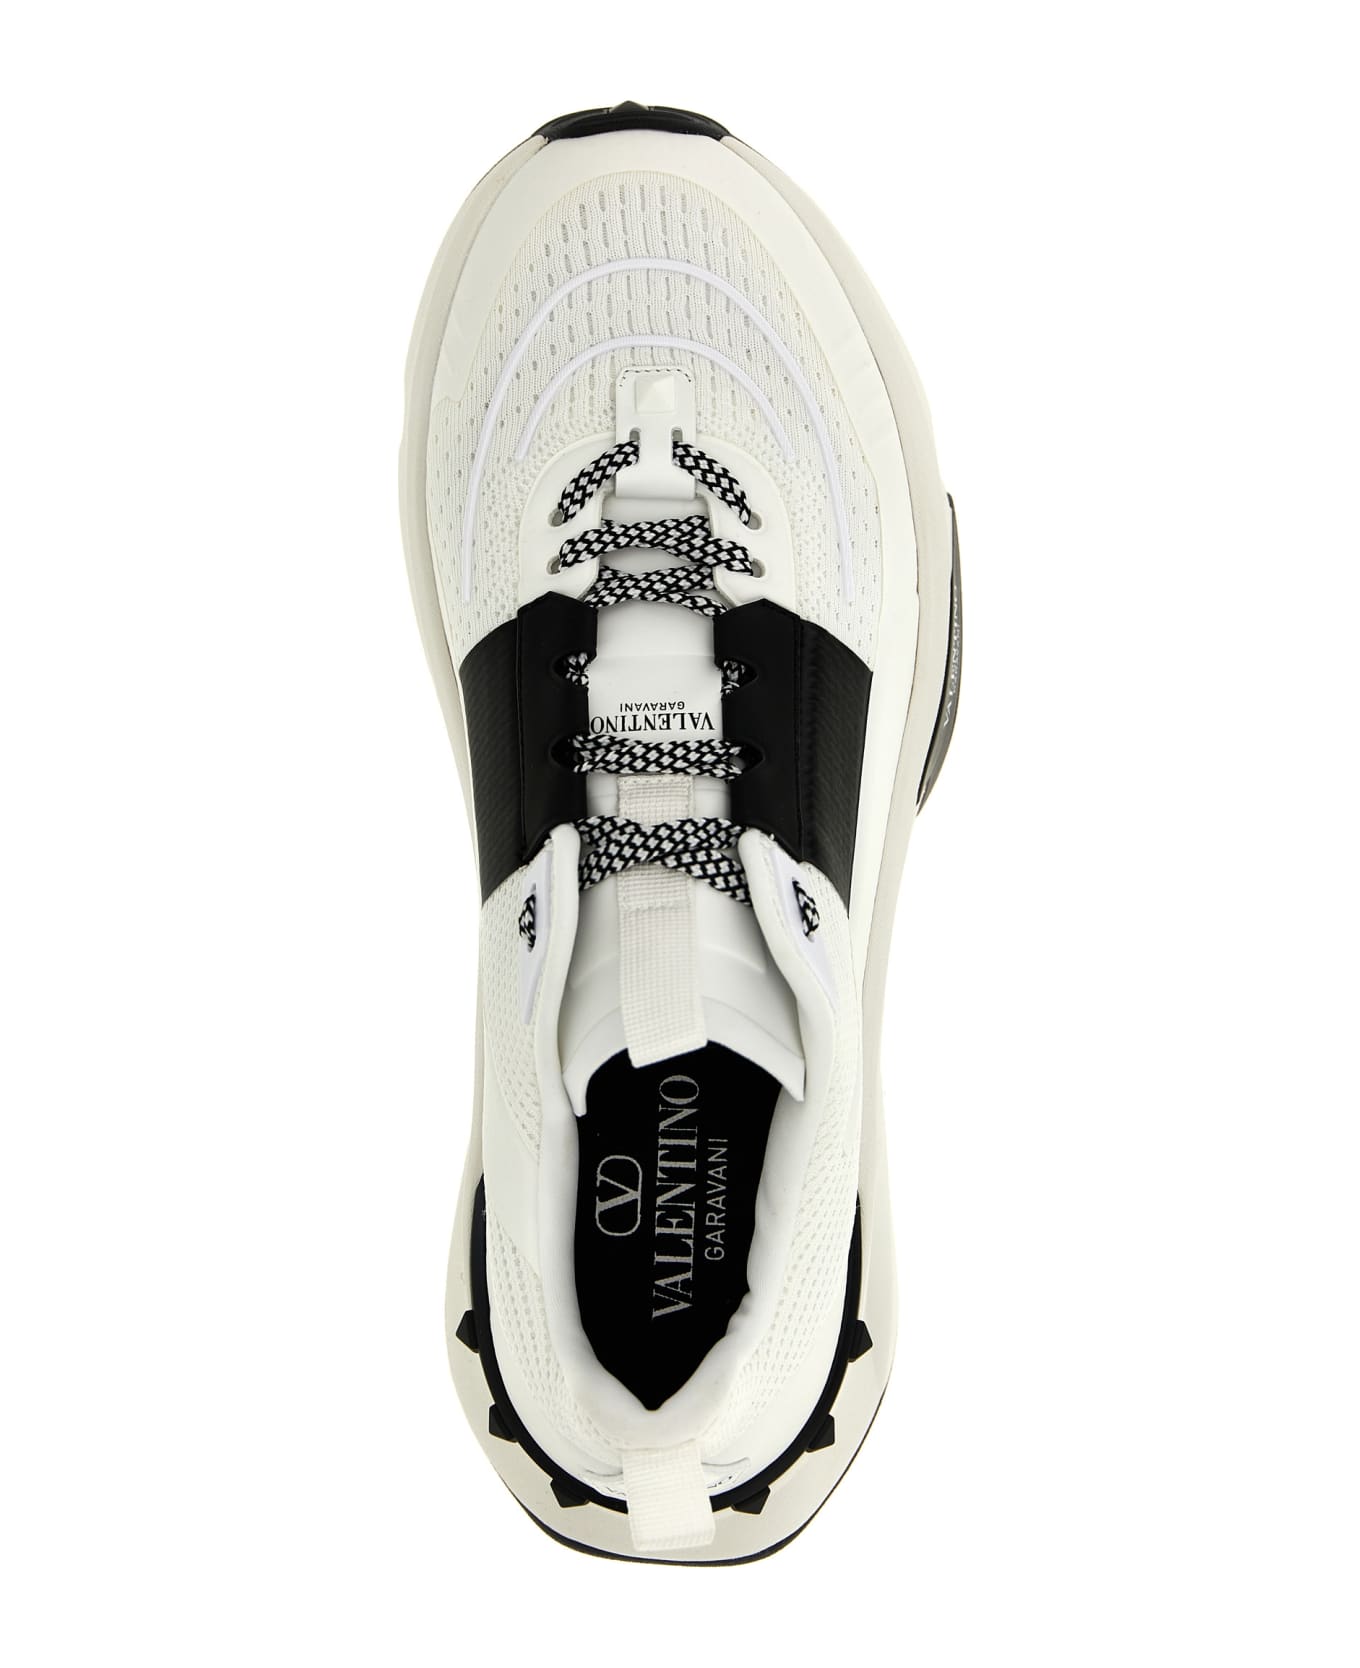 Valentino Garavani 'true Act' Sneaker - White/Black スニーカー